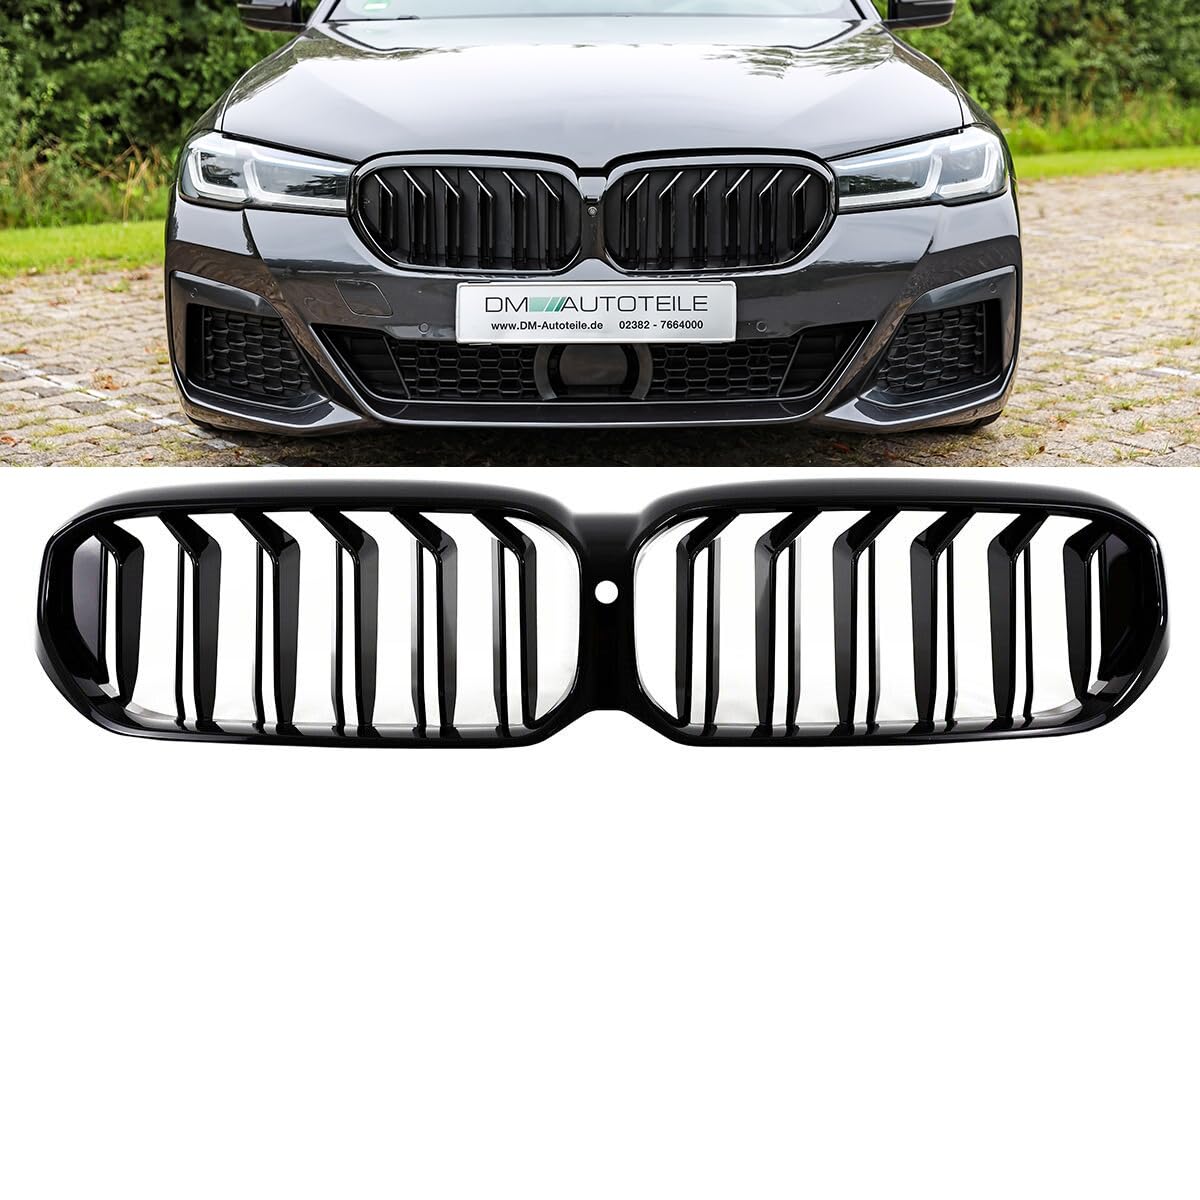 DM Autoteile Sport Doppelsteg Kühlergrill schwarz kompatibel für BMW 5er G30 G31 LCI Facelift mit Frontkamera von DM Autoteile